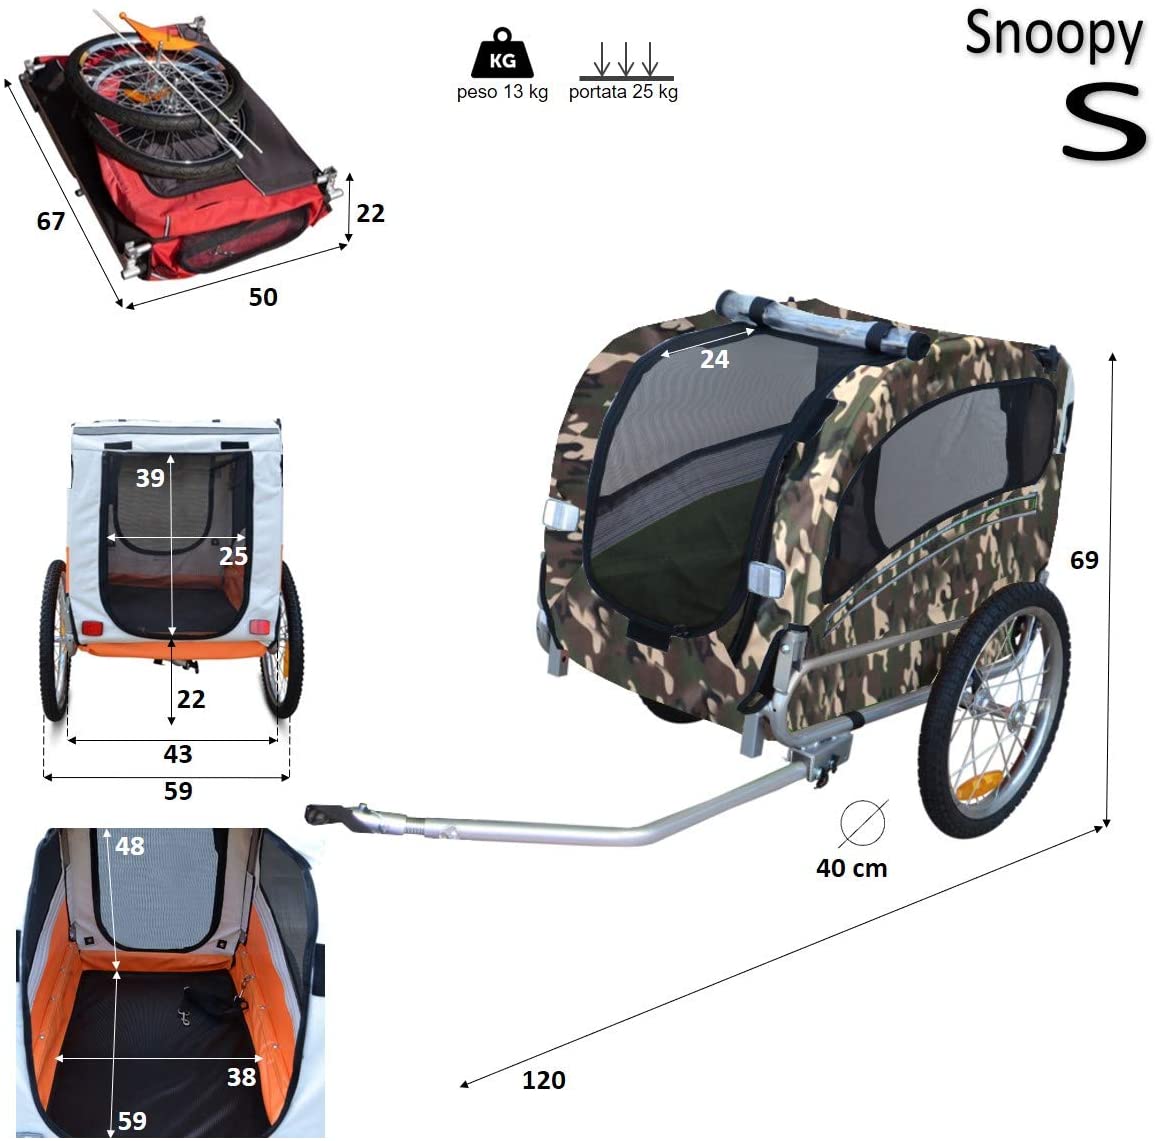  Papilioshop Snoopy Remolque de Bicicleta para el Transporte de Perros y Animales 